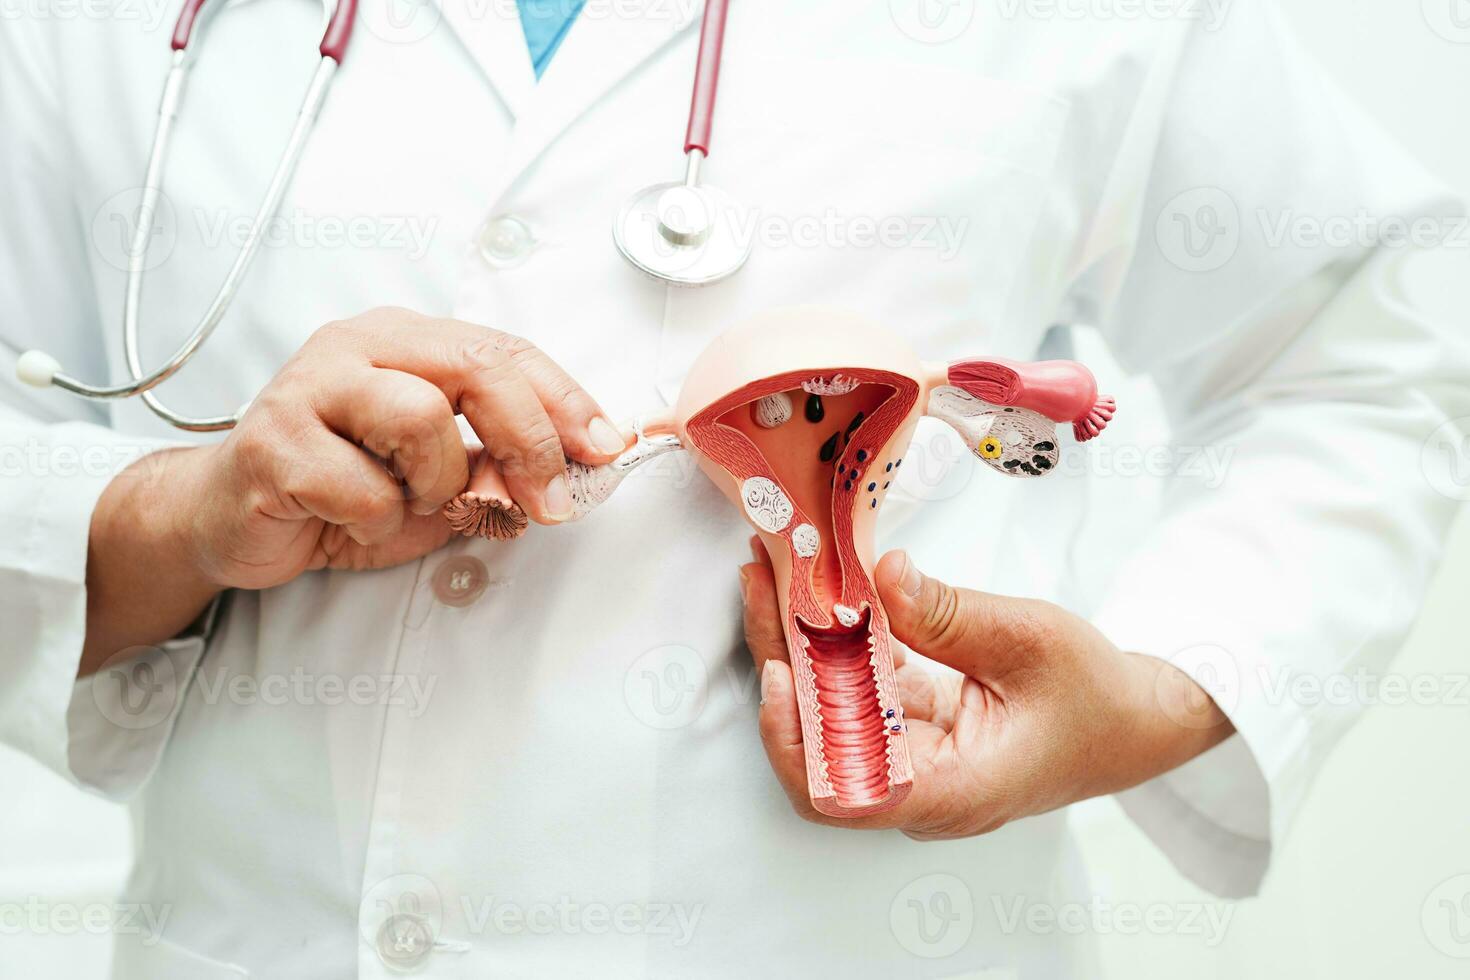 baarmoeder, dokter Holding anatomie model- voor studie diagnose en behandeling in ziekenhuis. foto